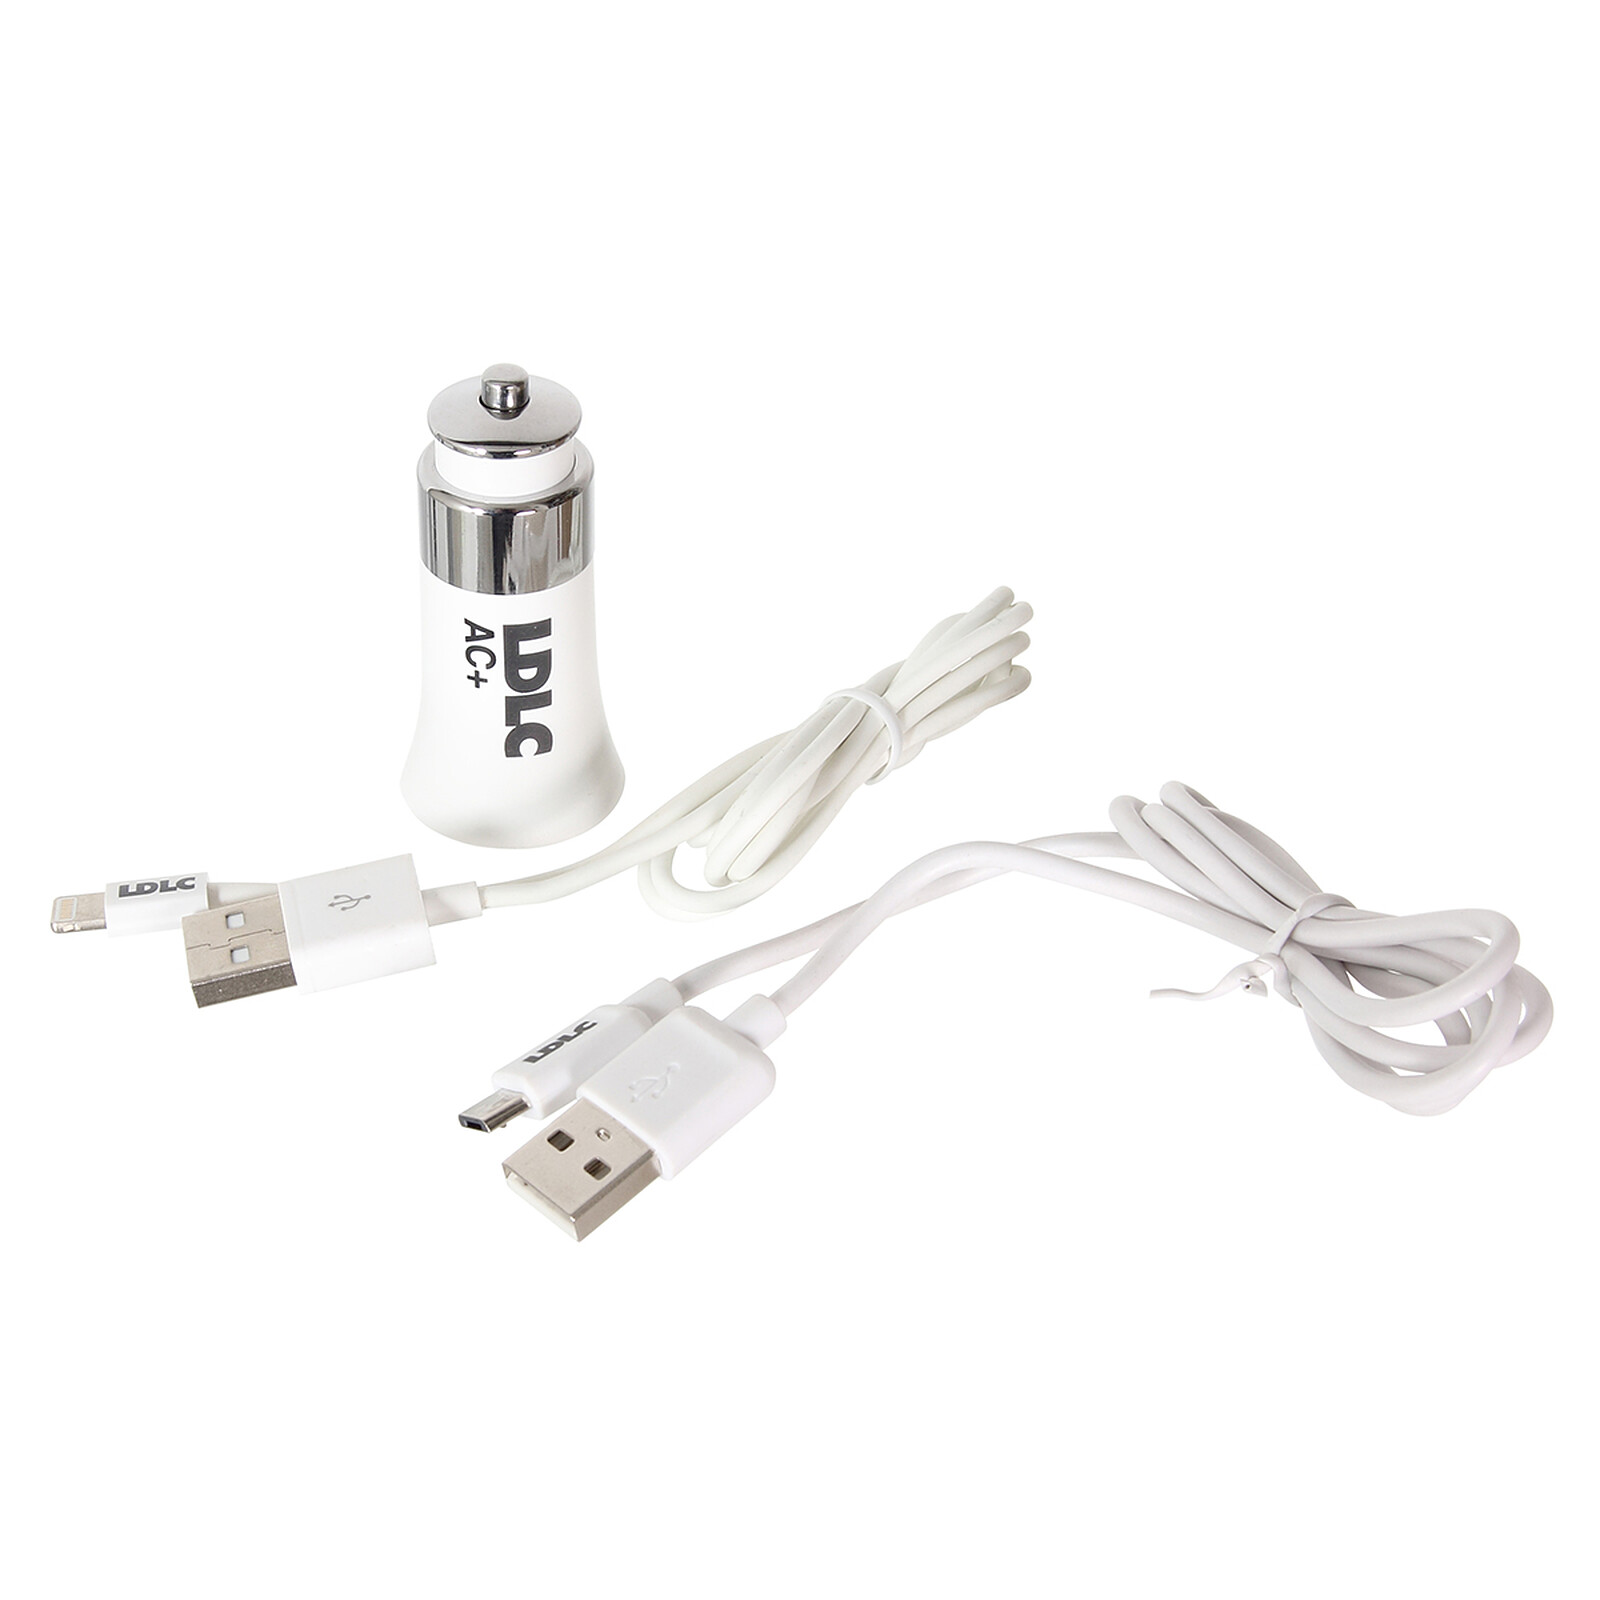 Mini cargador double USB 3.1A sur prise allume-cigare - Cargador coche -  LDLC